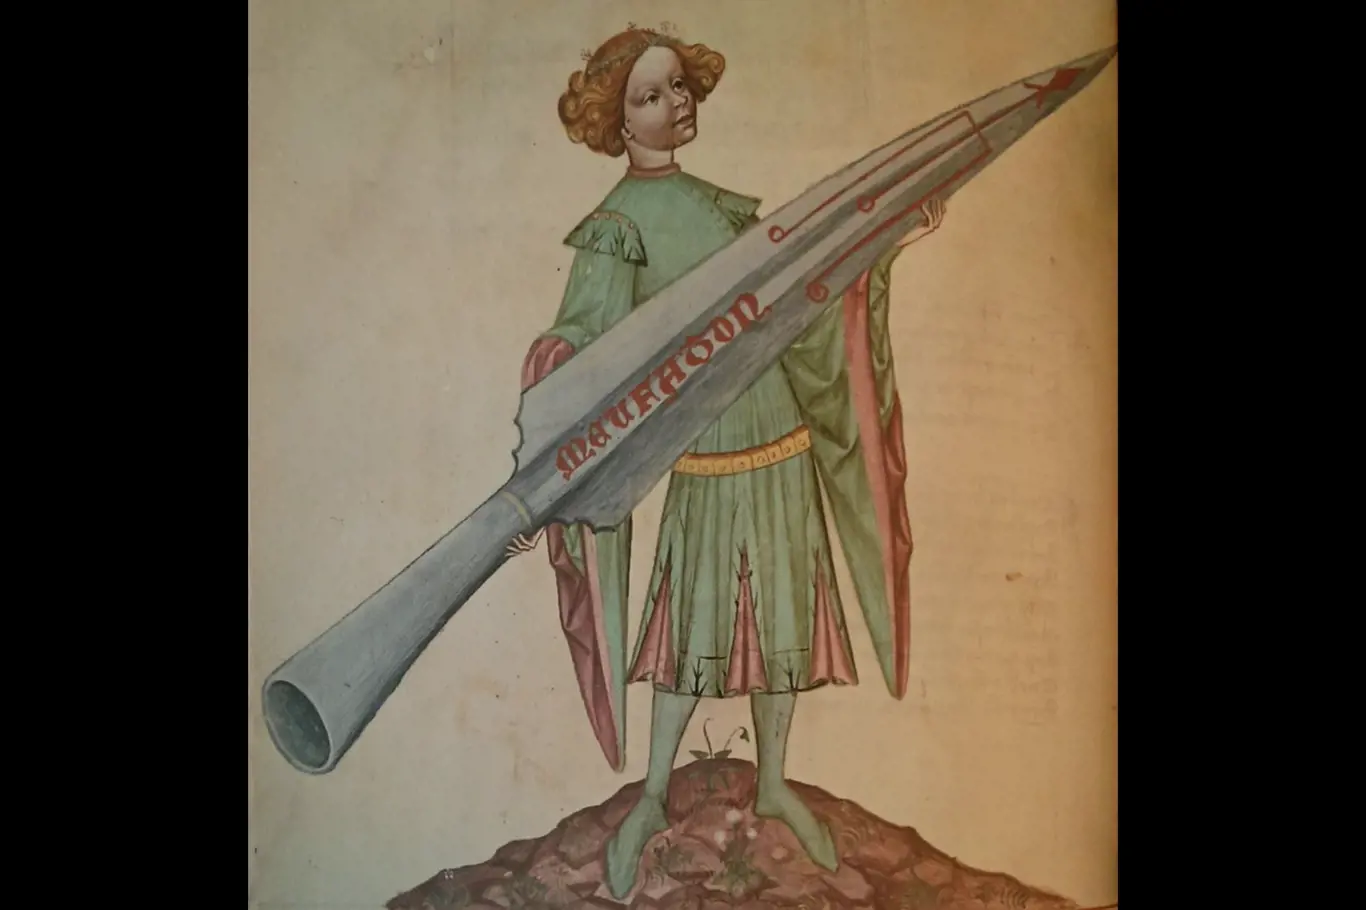 Obraz v Kyeserově Bellifortisu ukazuje psychologický vliv symbolických ikon na bojovou sílu vojáků, když se přenáší obrazem.